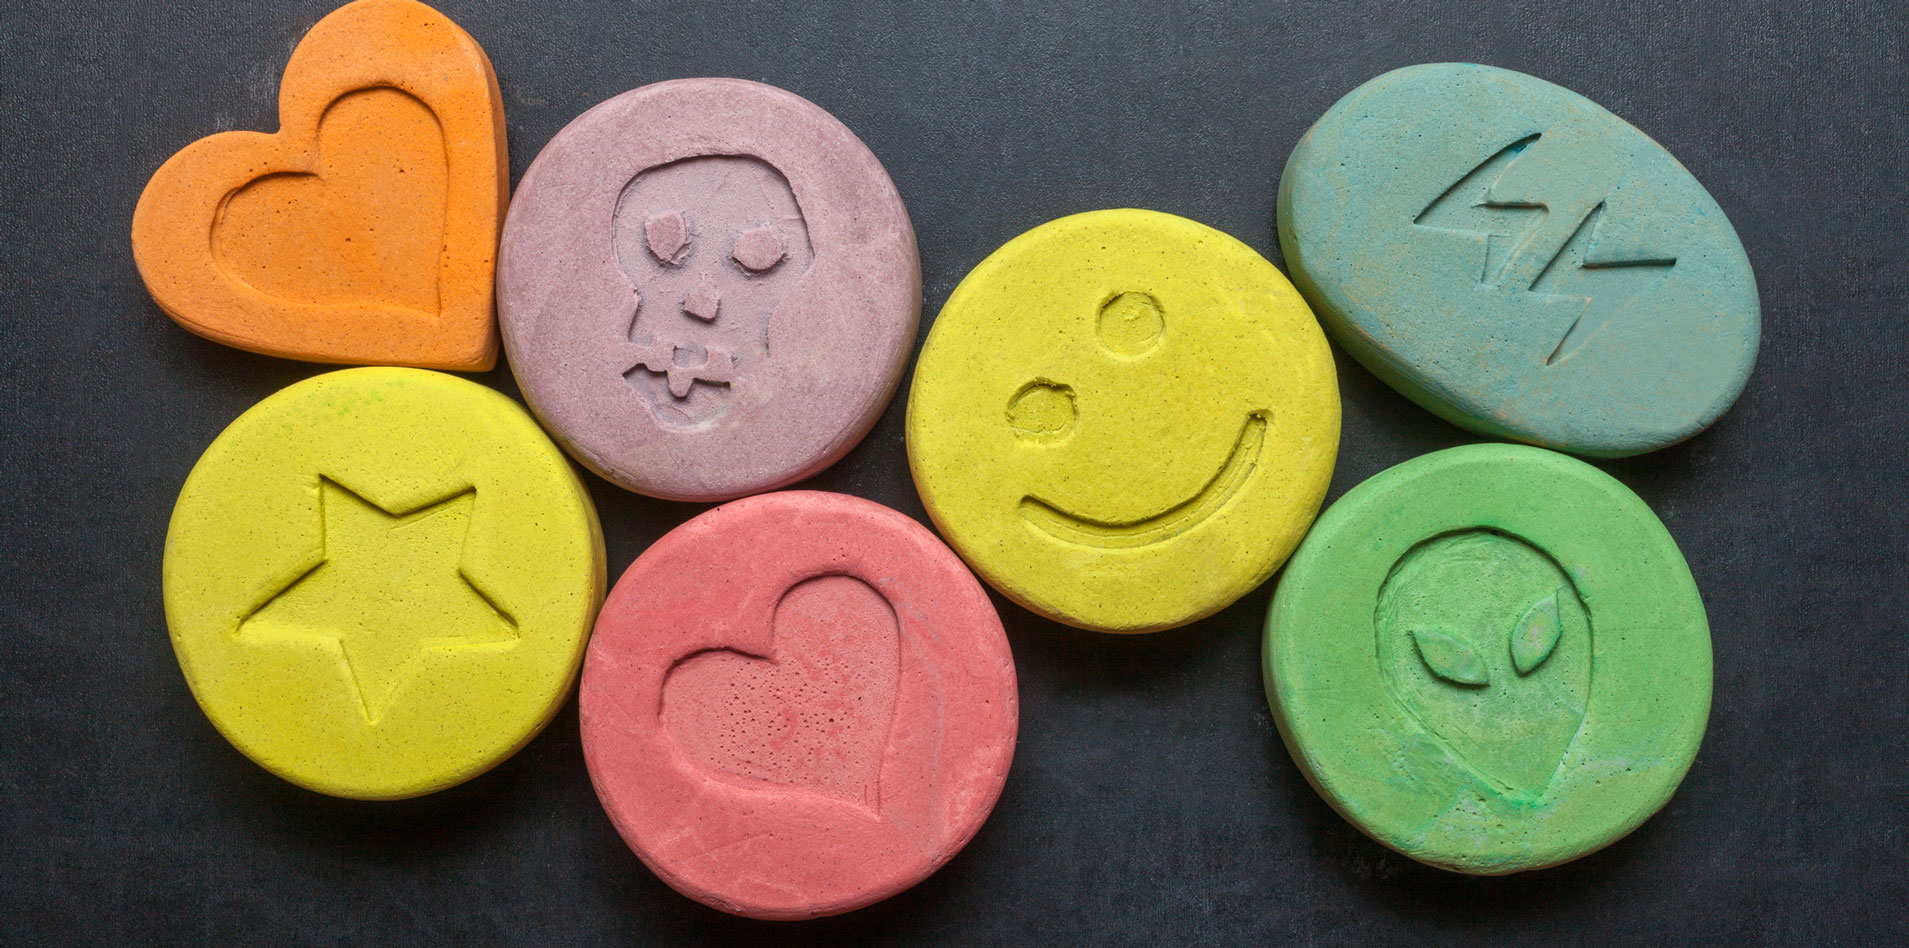 Los efectos que produce el MDMA, la droga que consumen cada vez más jóvenes